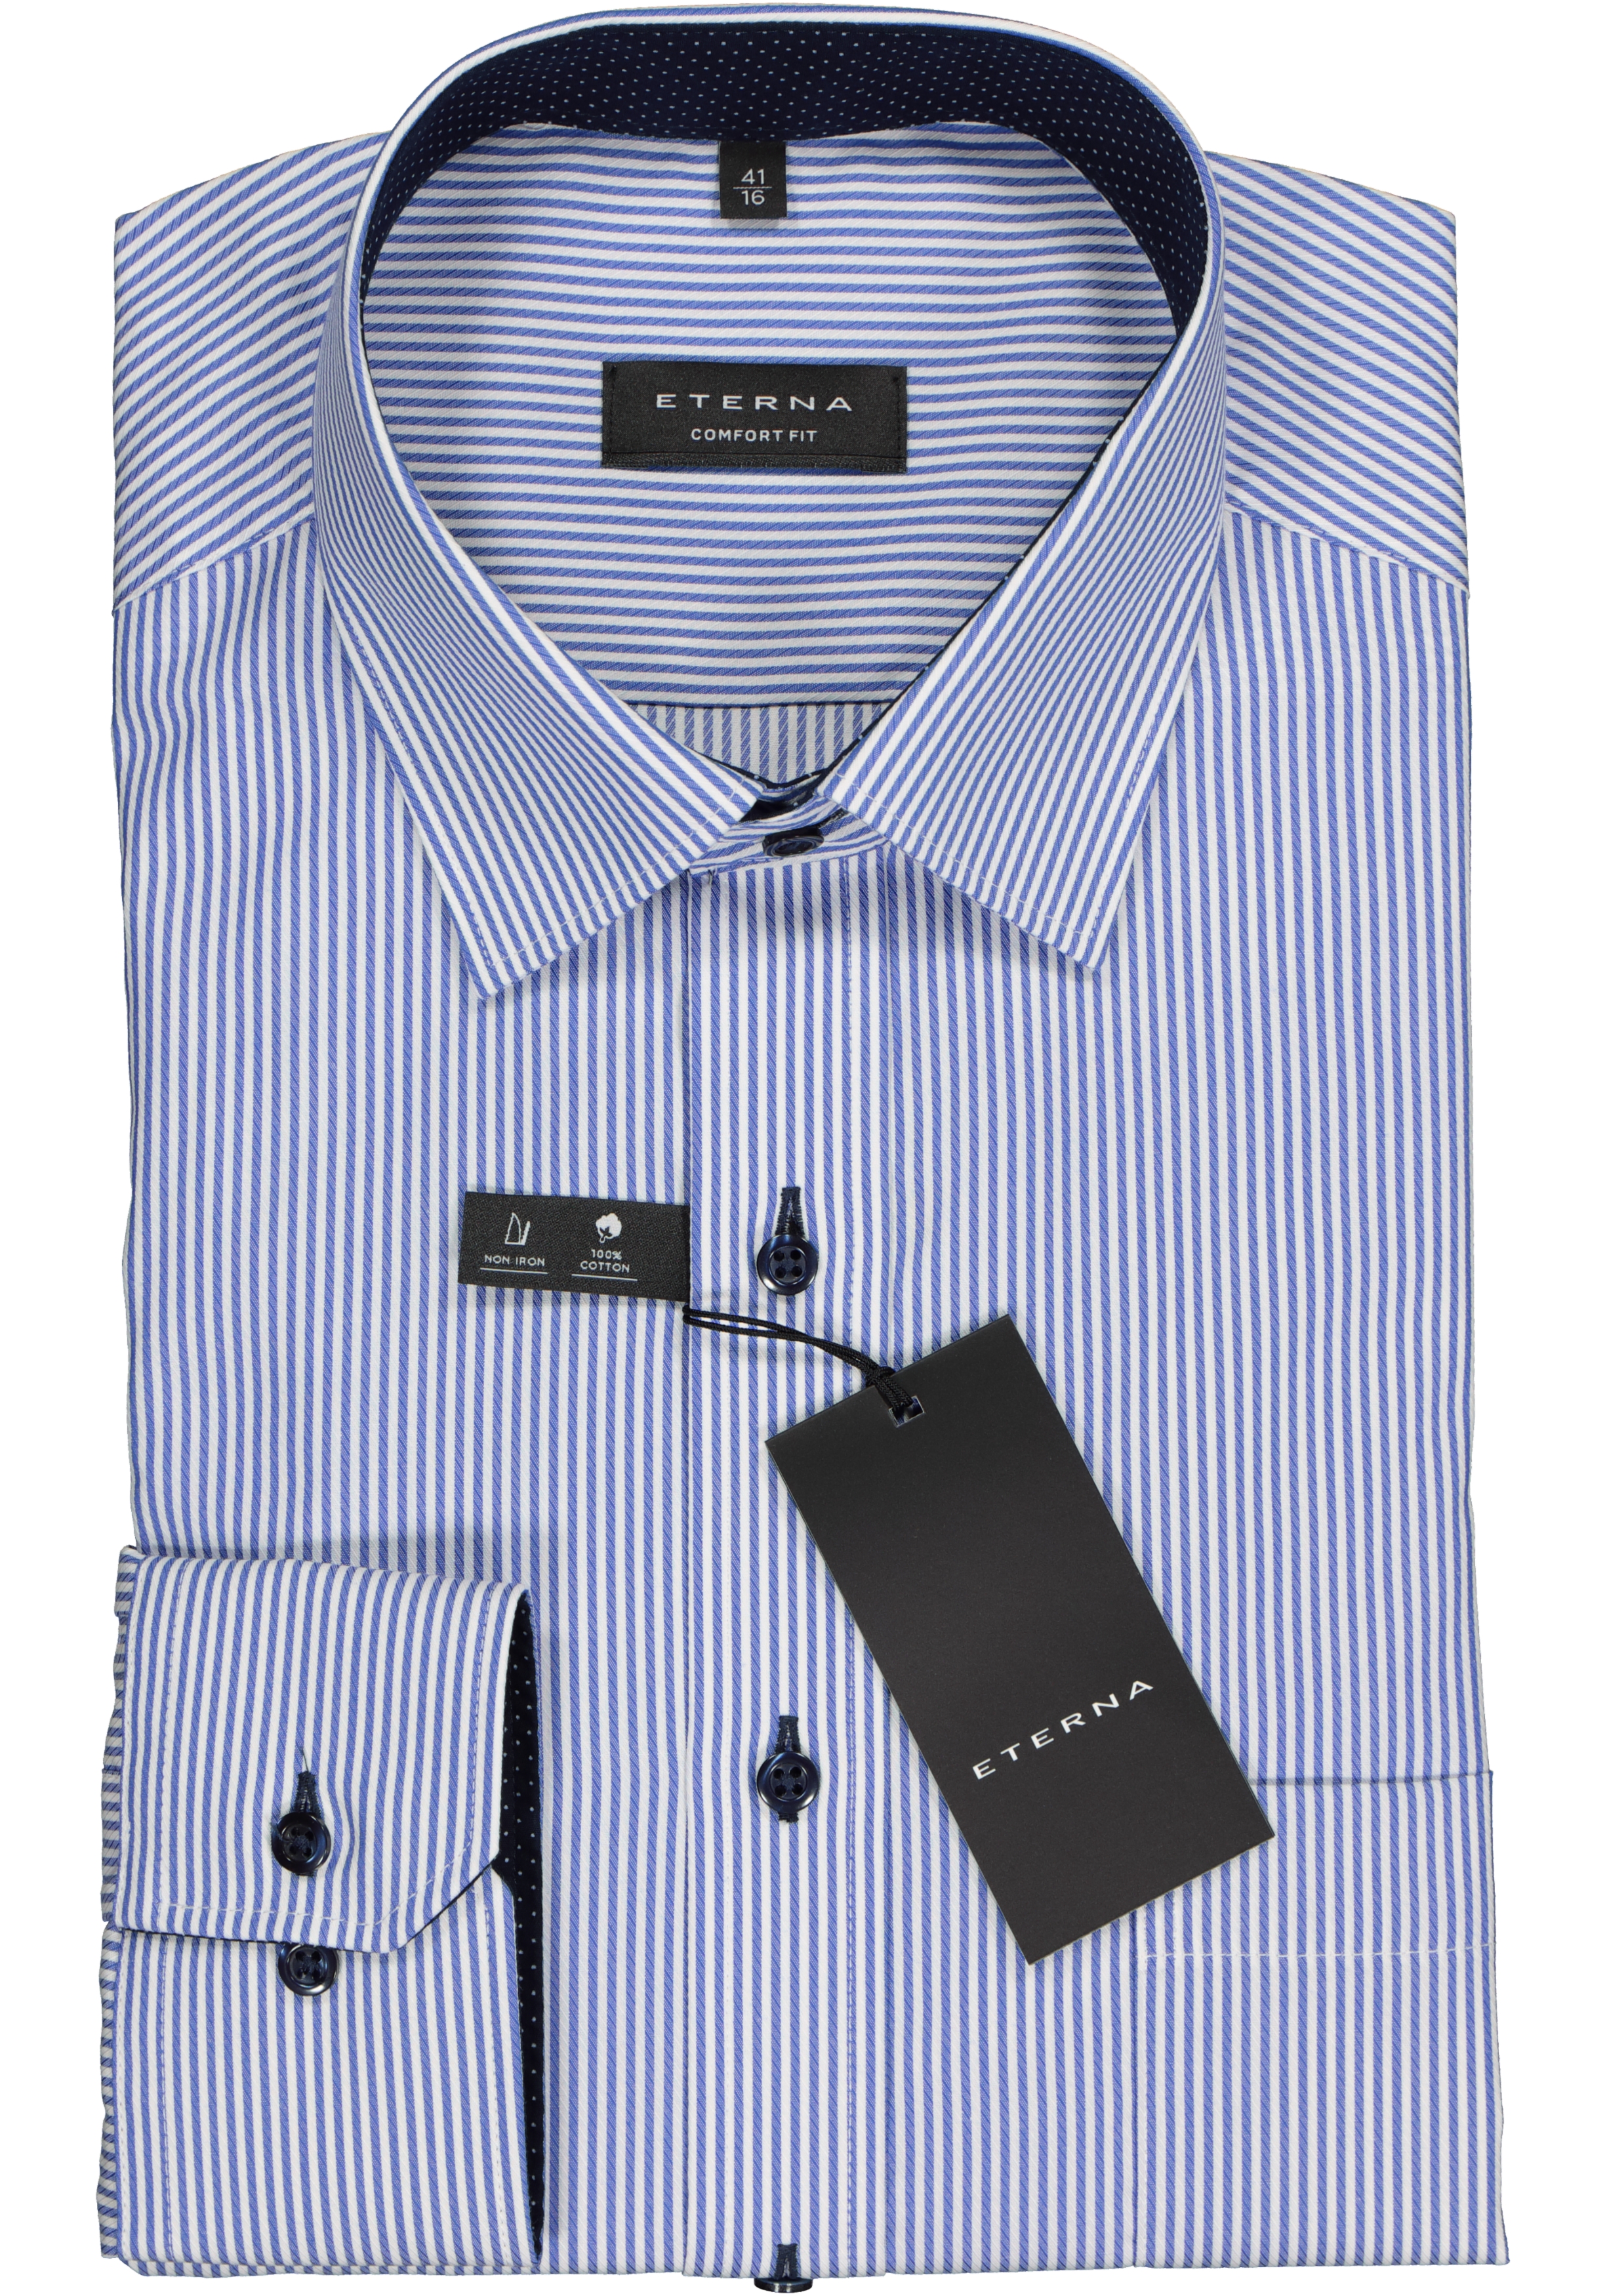 Kleding Herenkleding Overhemden & T-shirts Oxfords & Buttondowns Burberry London Gestreept Logo Shirt met lange mouwen 